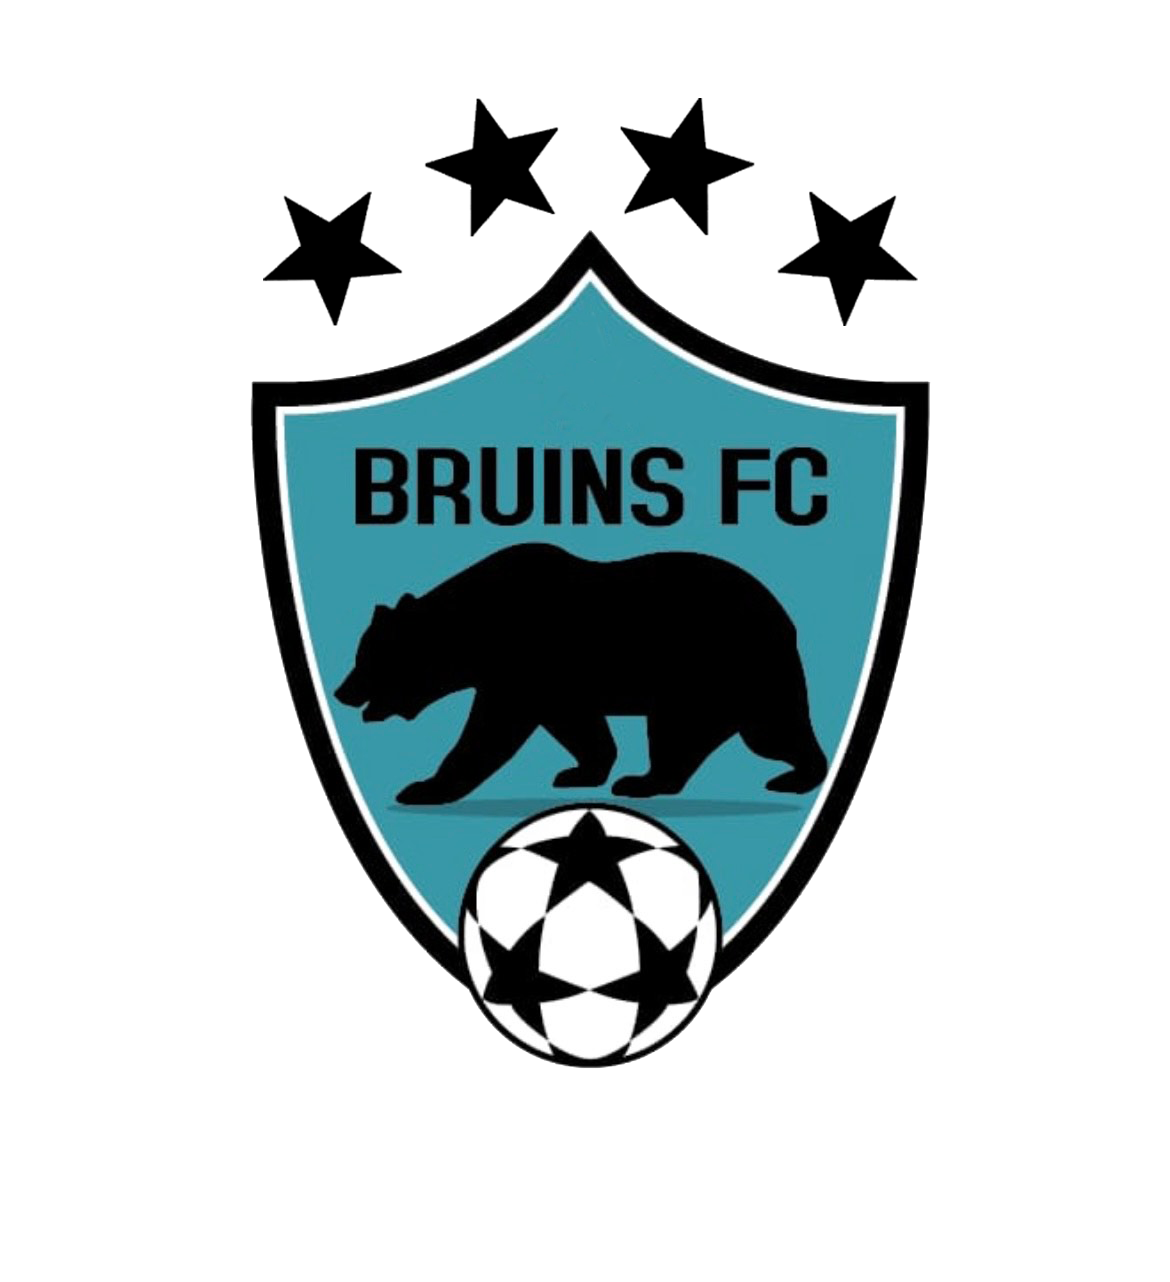 BRUINS FC SOCCER INSTITUTE